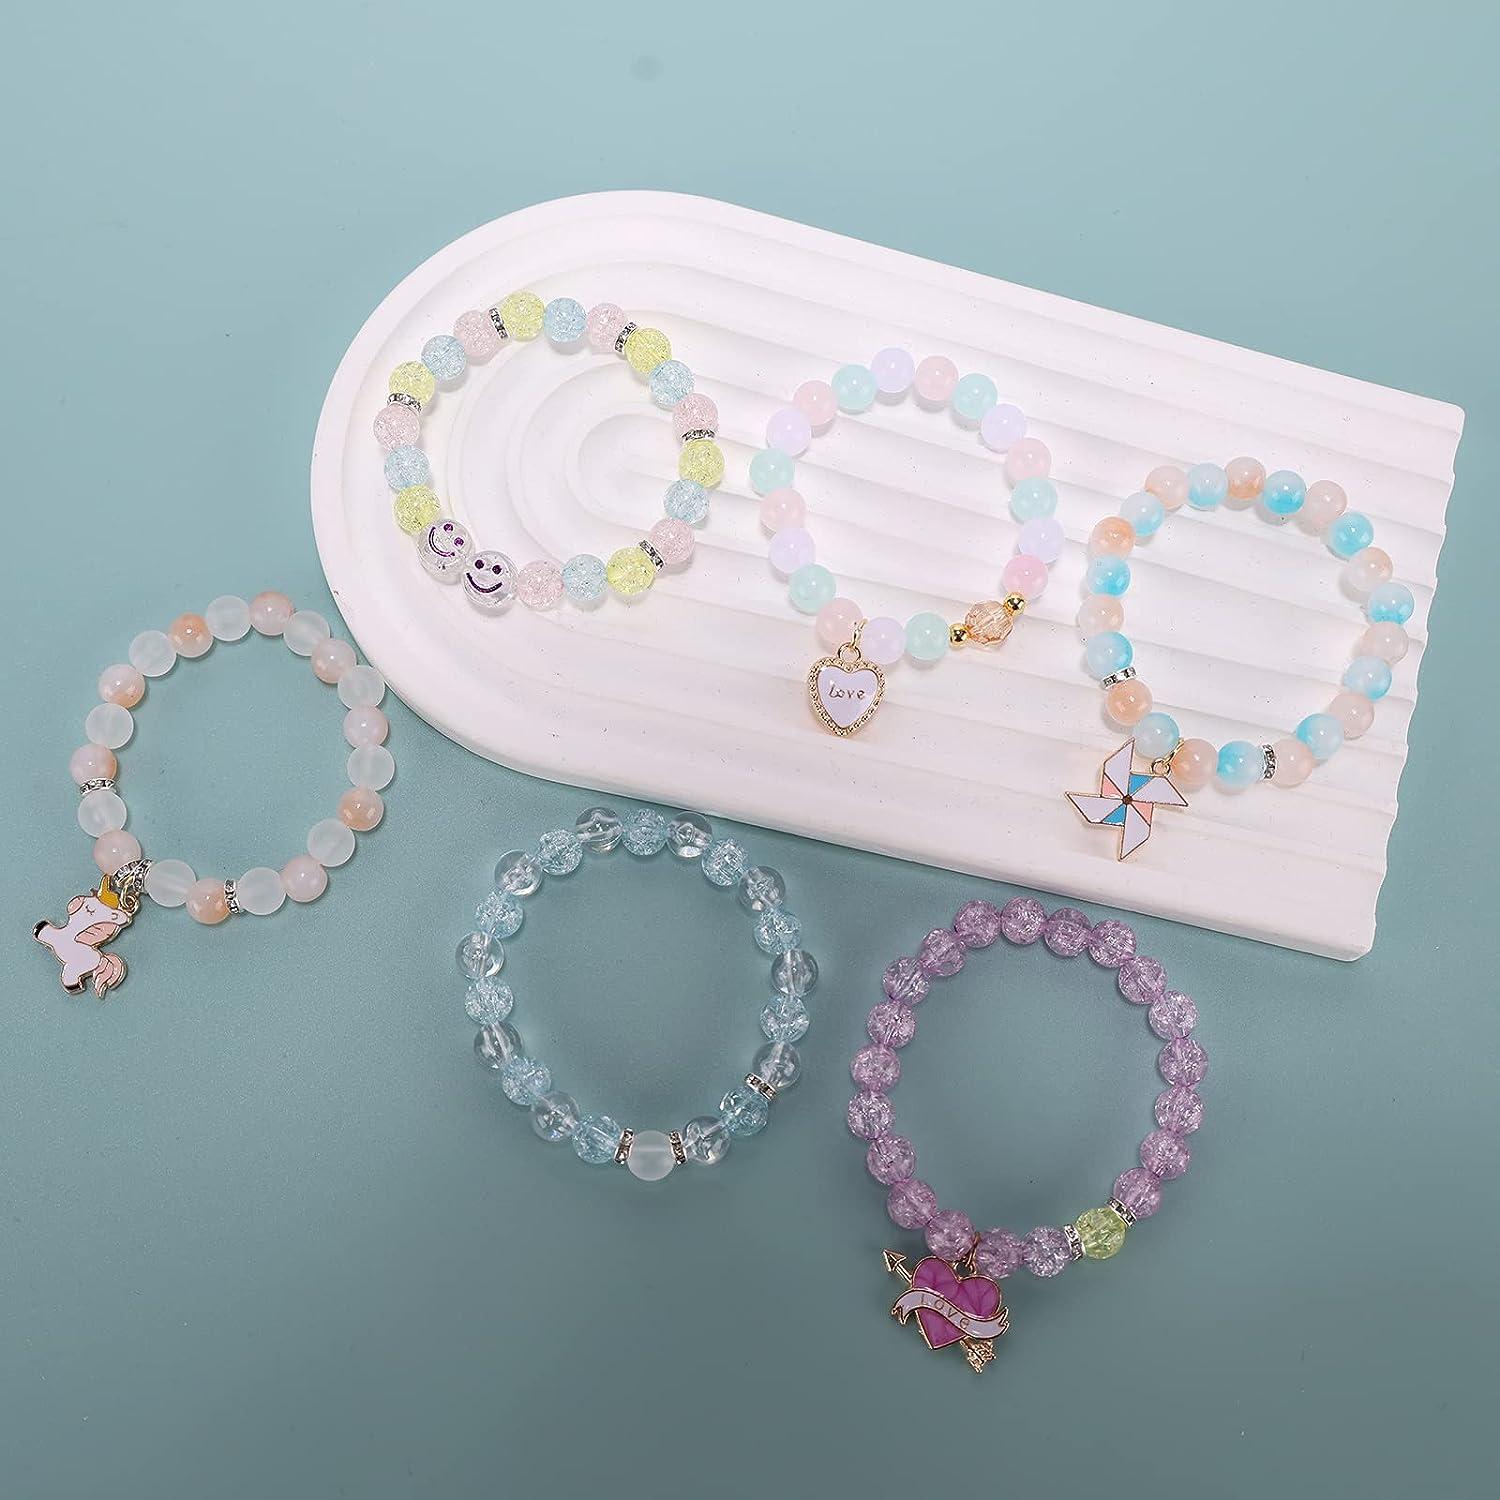 Transparent Color Beads Bracelet Making Kit, Girls' Lovely